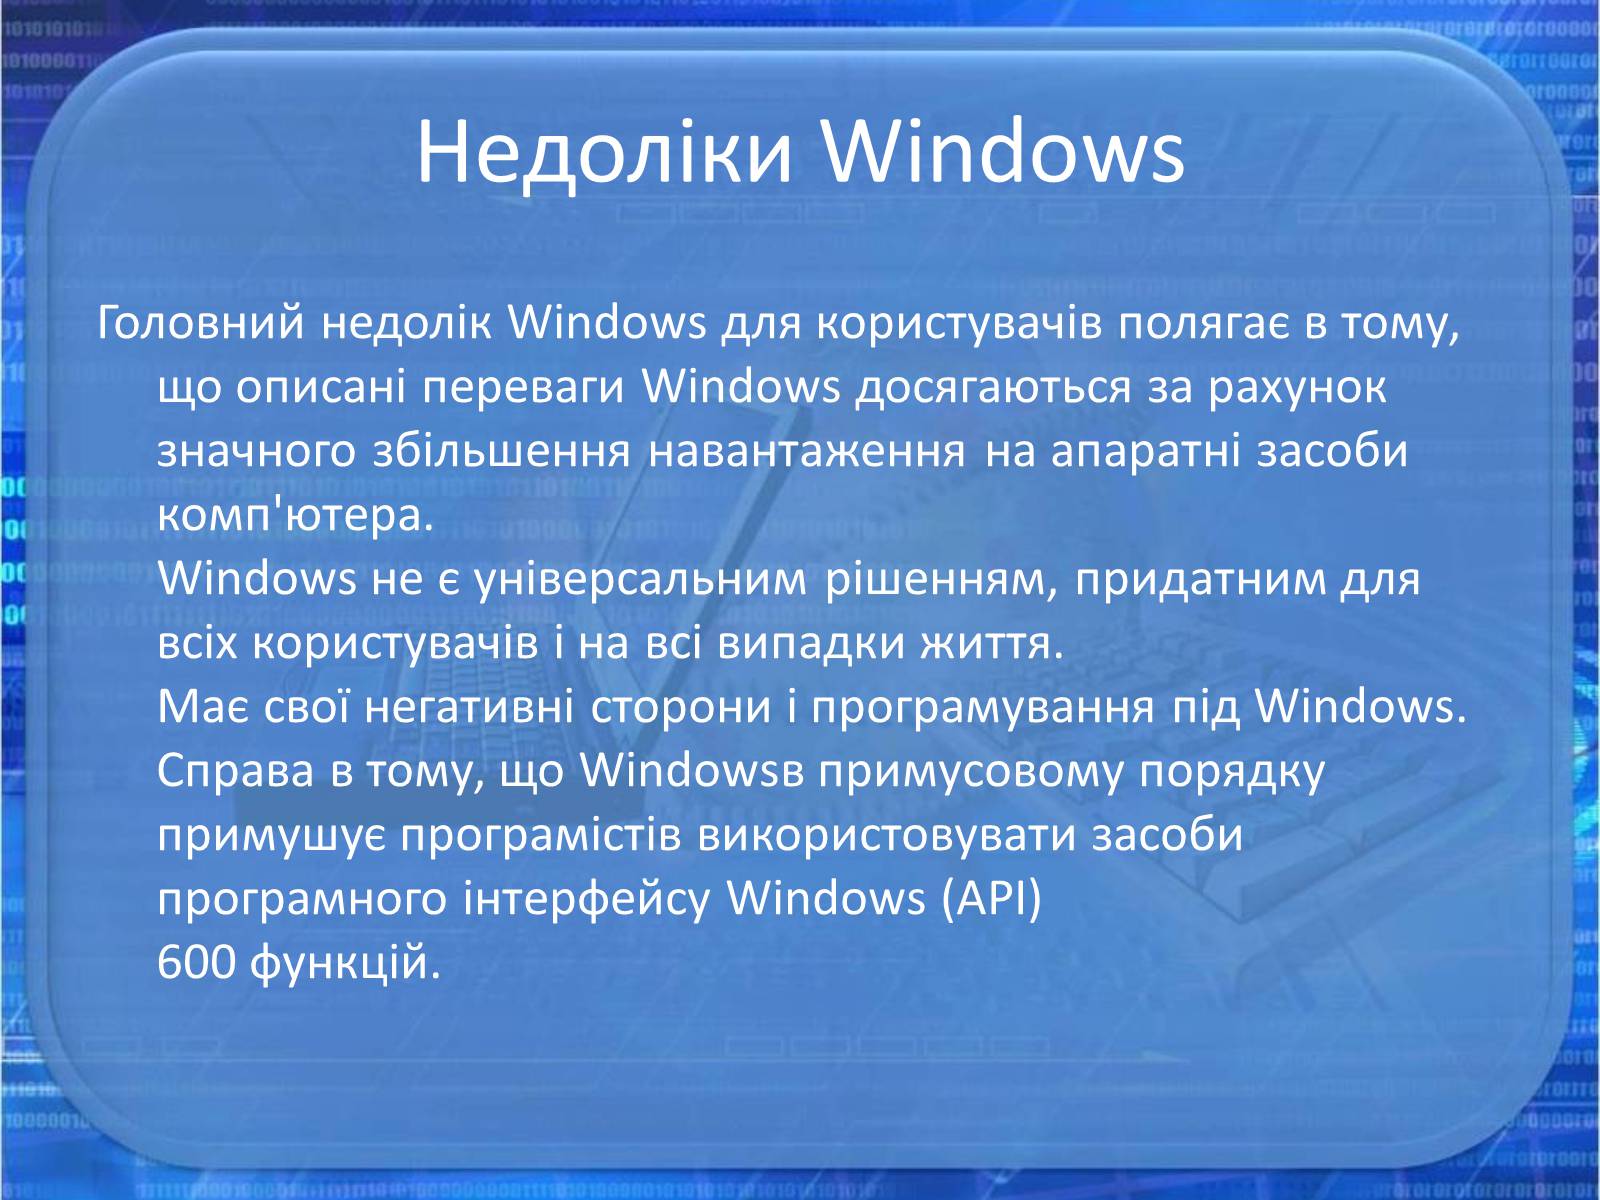 Когда появился виндовс. Microsoft Windows преимущества и недостатки. Недостатки виндовс. Основные достоинства ОС виндовс. Достоинства и недостатки виндовс.